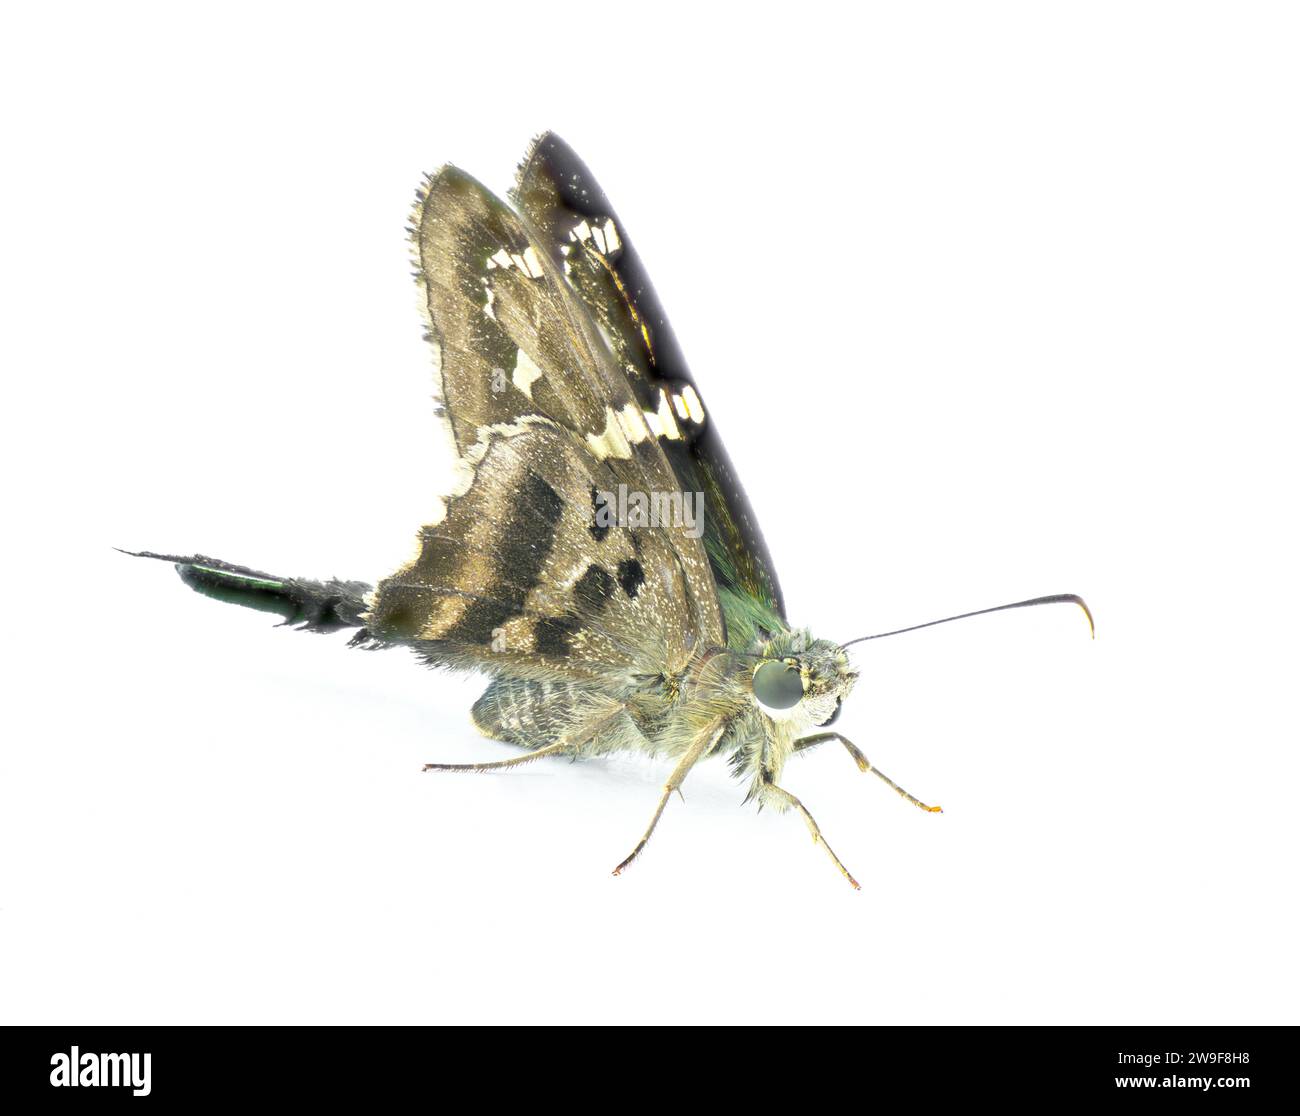 Skipper dalla coda lunga o frullatore di fagioli - Urbanus proteus - grande farfalla grigia, nera con torace blu verde comune nel sud-est degli Stati Uniti Foto Stock